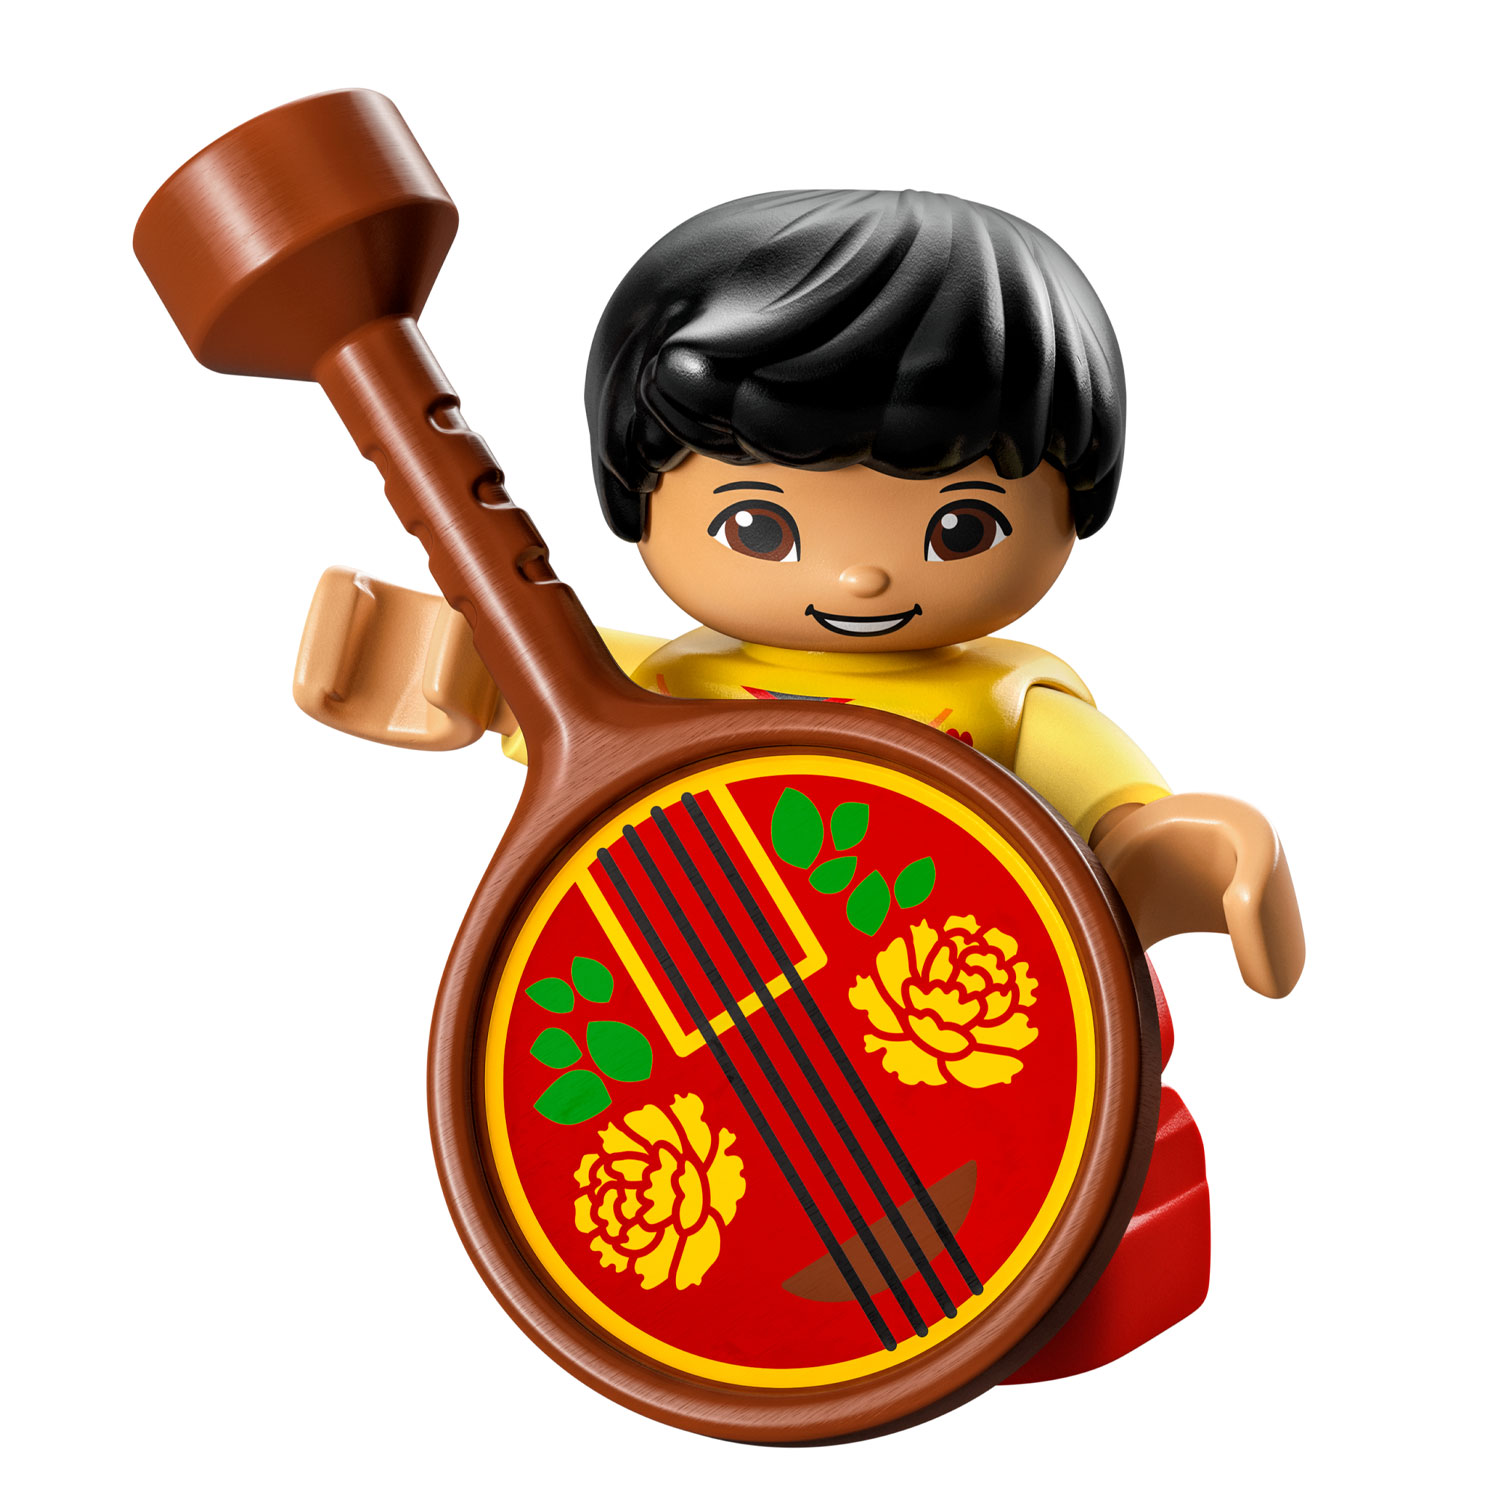 LEGO Duplo 10411 Erfahren Sie mehr über die chinesische Kultur